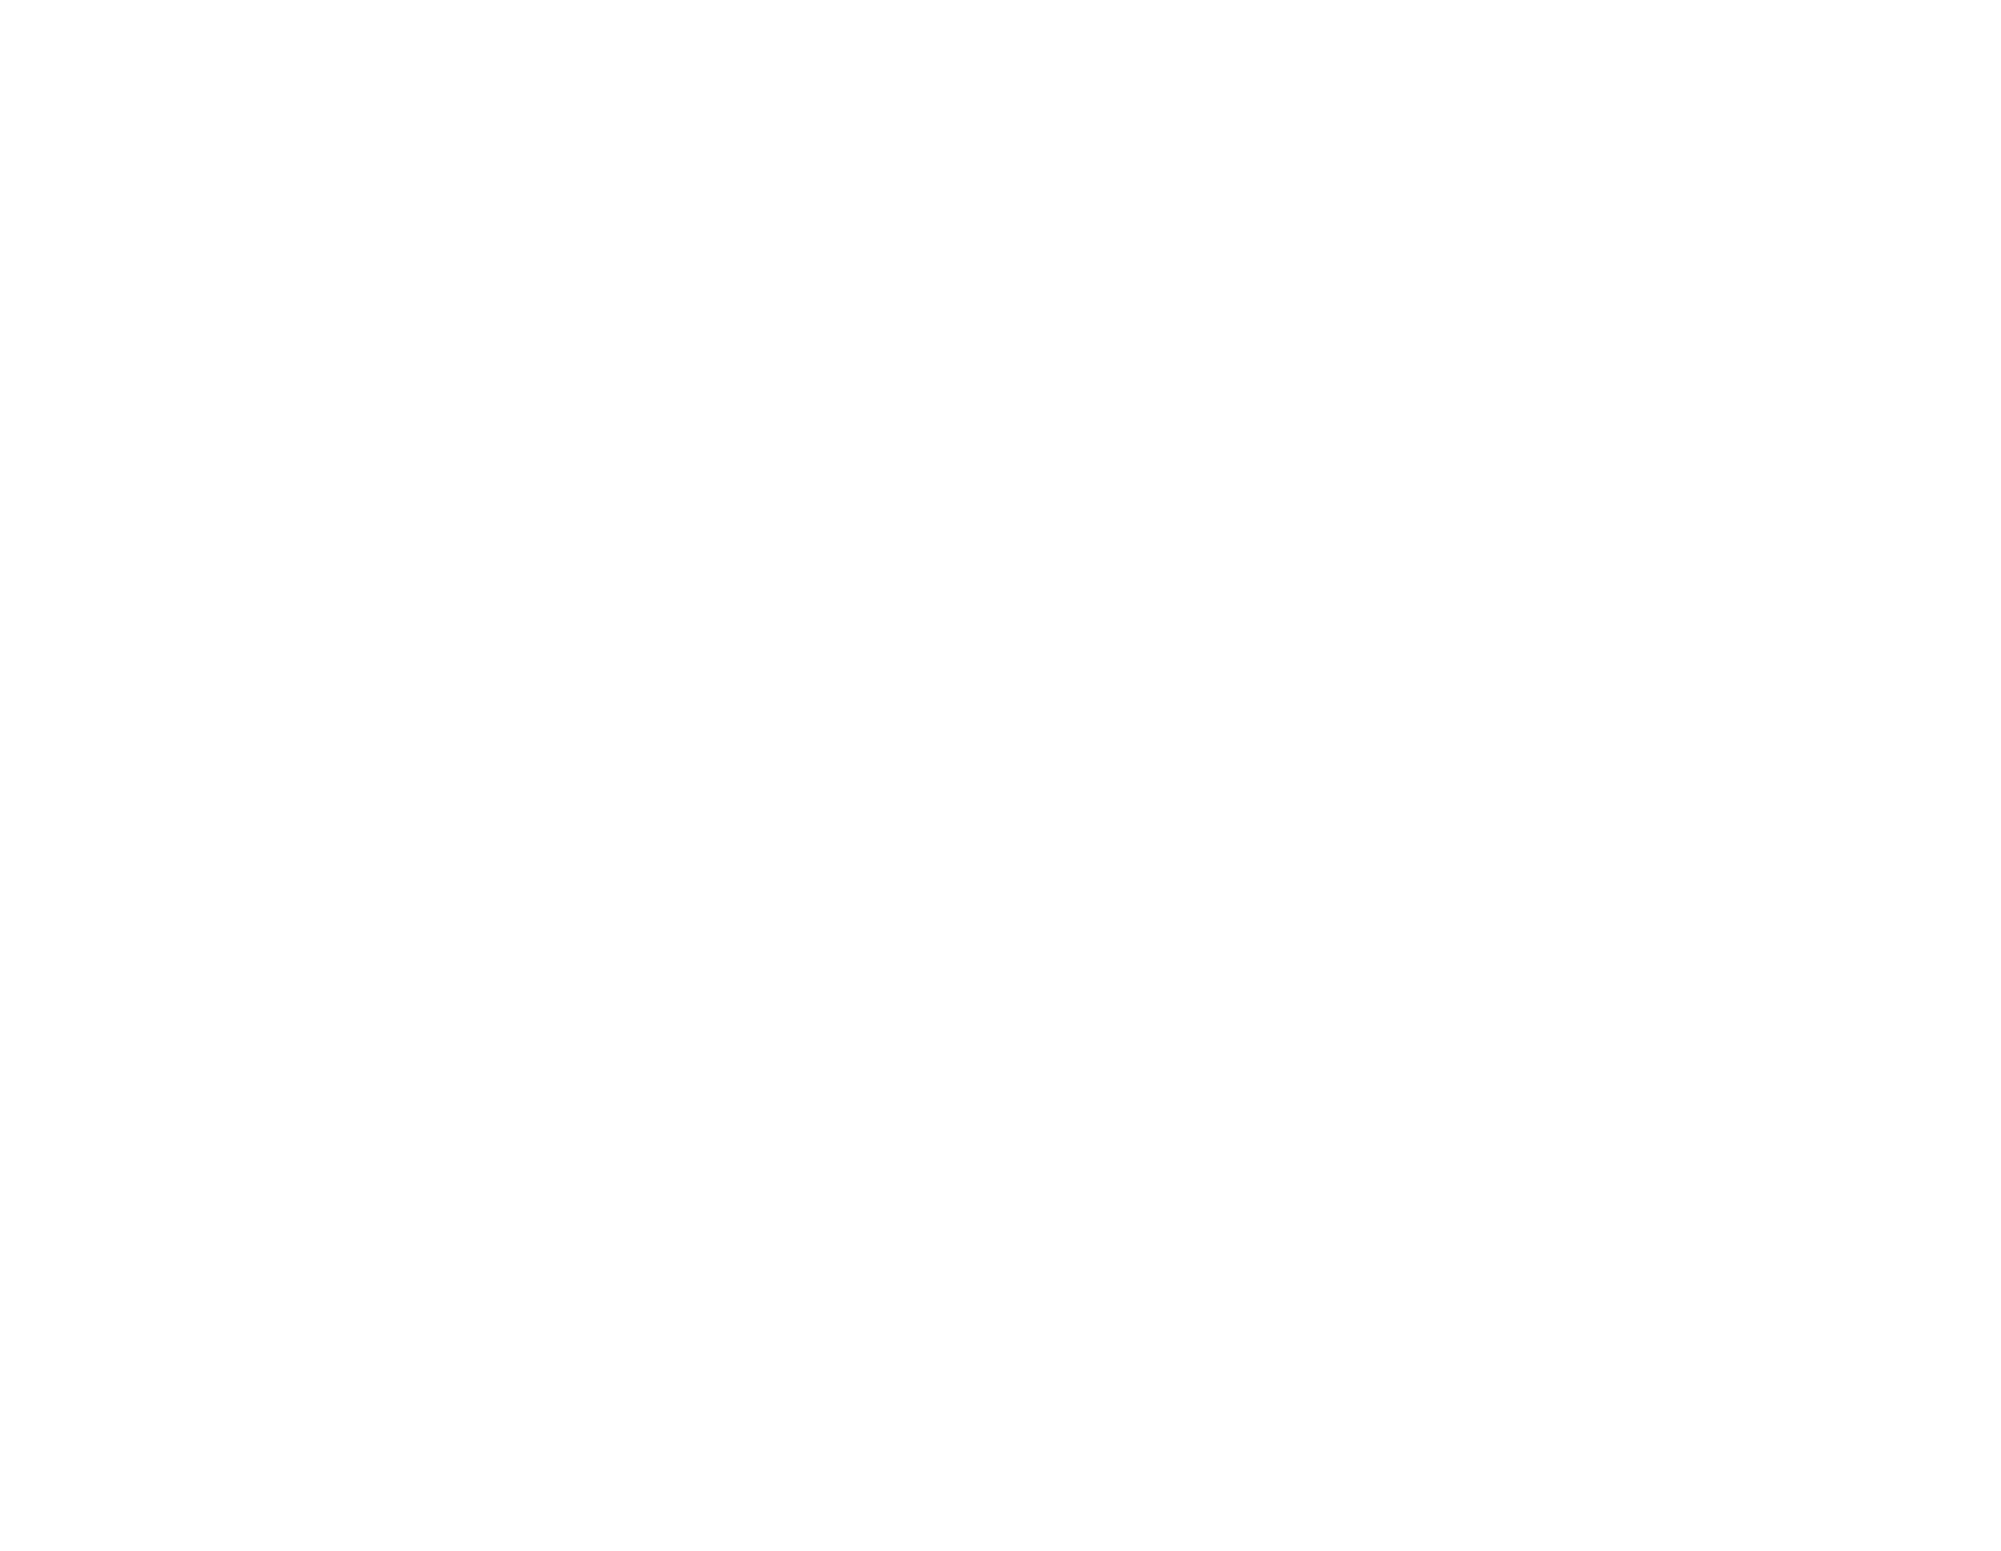 AquaStudio buy Aquariums and fishes in Ahmedabad